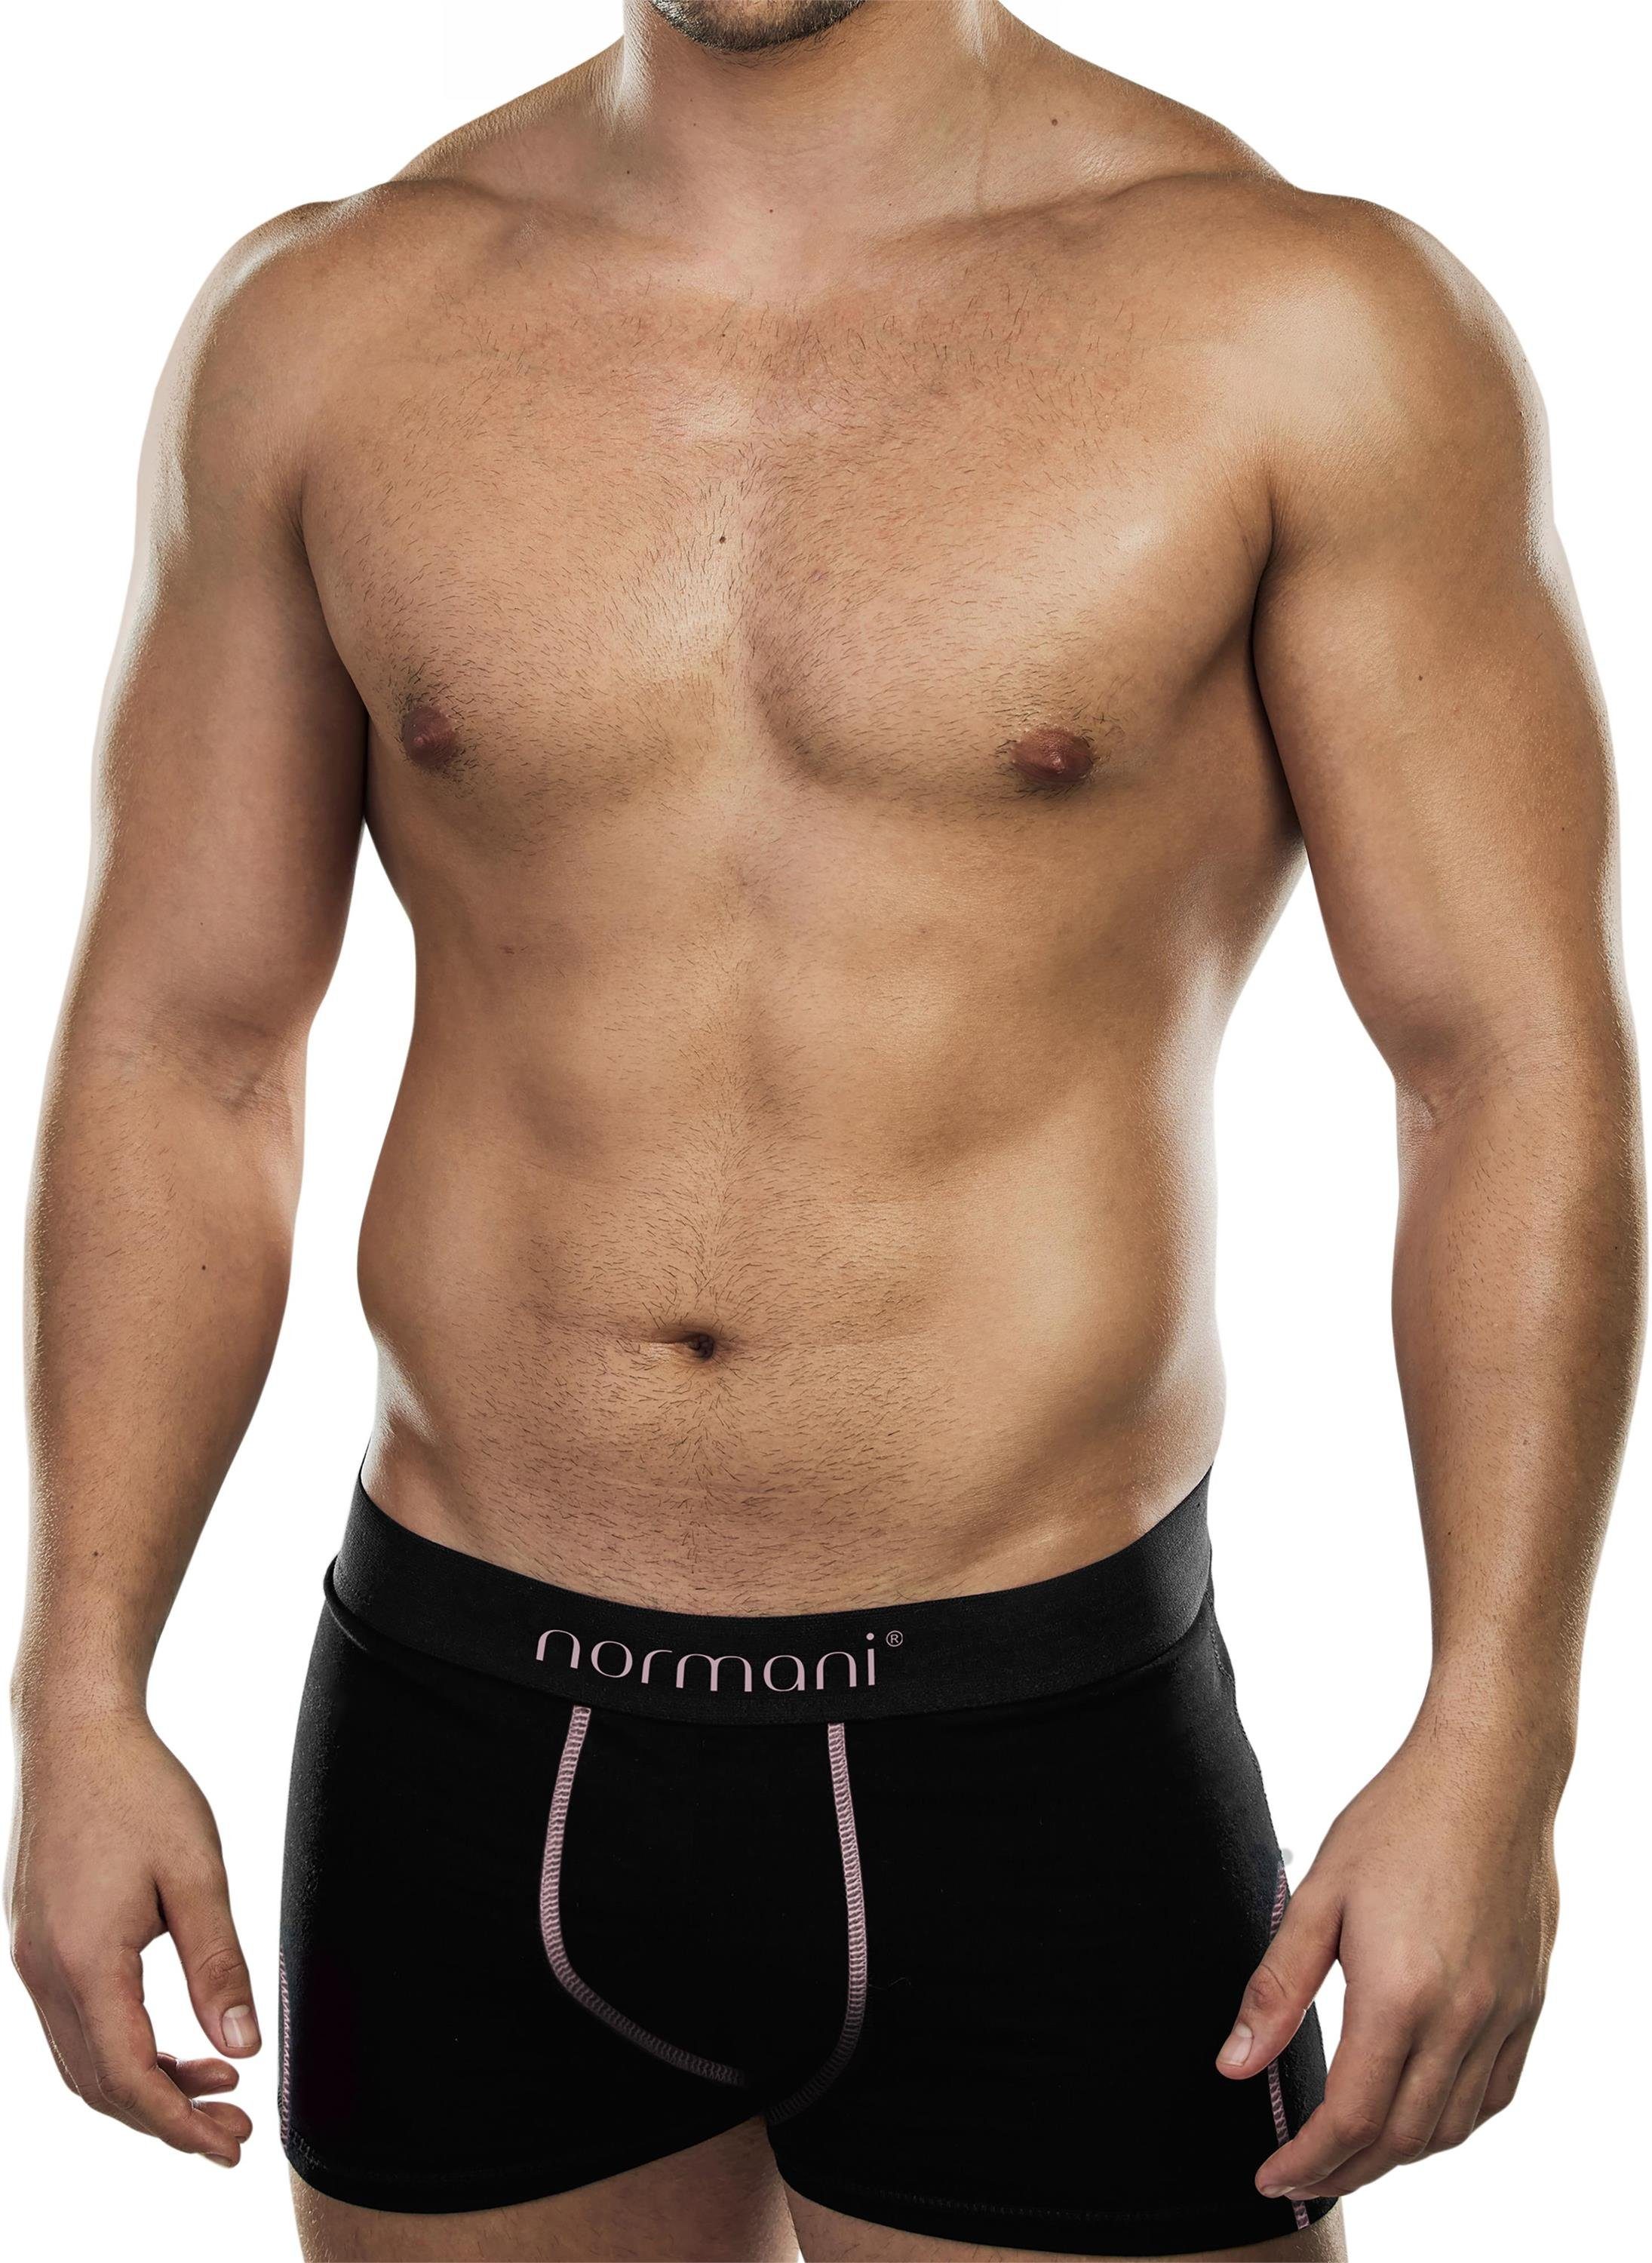 normani Boxershorts 6 weiche Boxershorts aus Baumwolle Unterhose aus atmungsaktiver Baumwolle für Männer Lachs